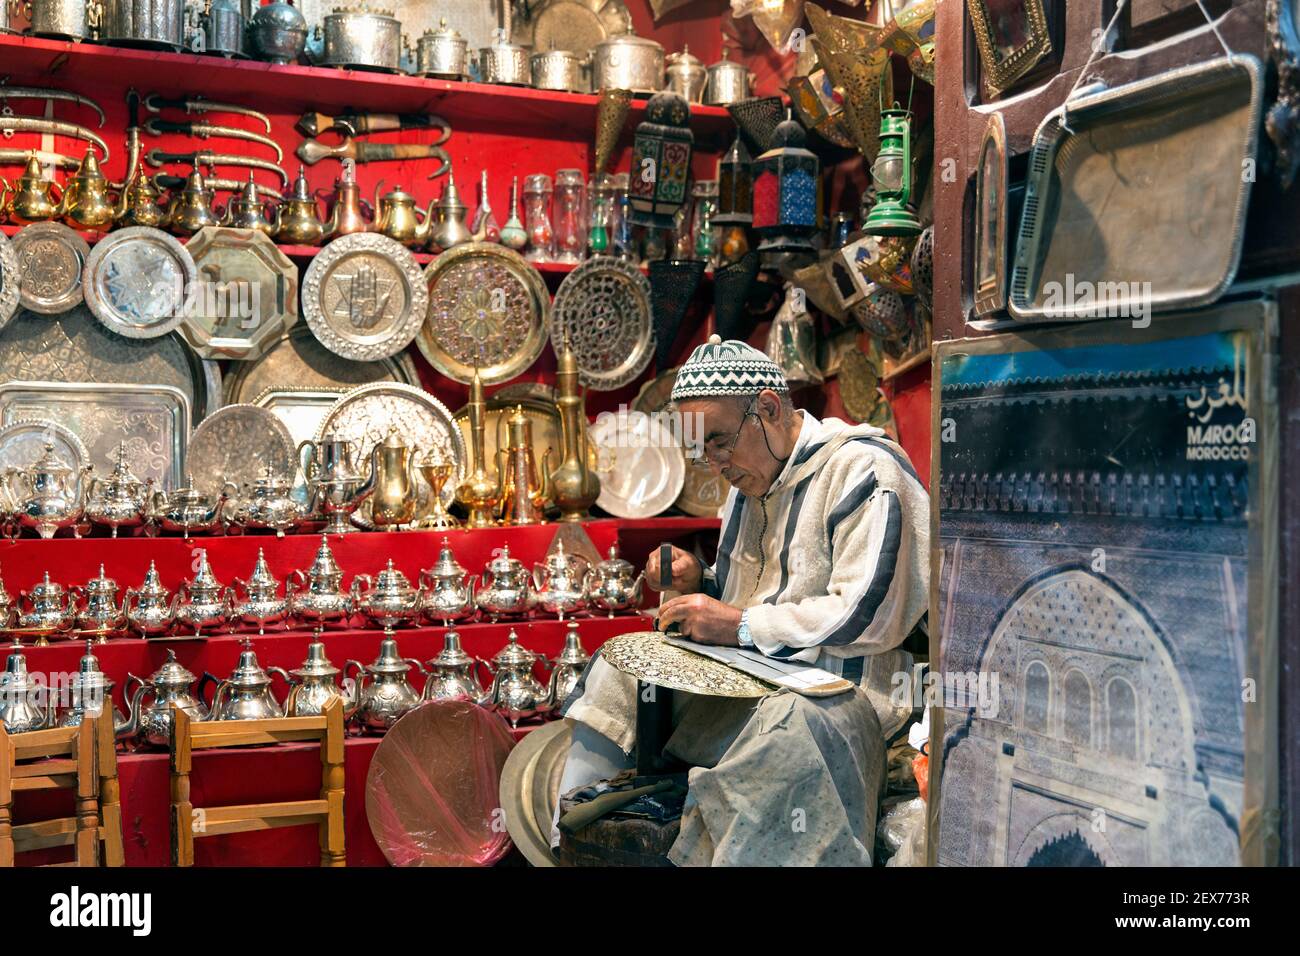 Ein silberner schmied, der in einem Geschäft an seinen Waren arbeitet, zeigt Silberteller, Teekannen und Tabletts Stockfoto